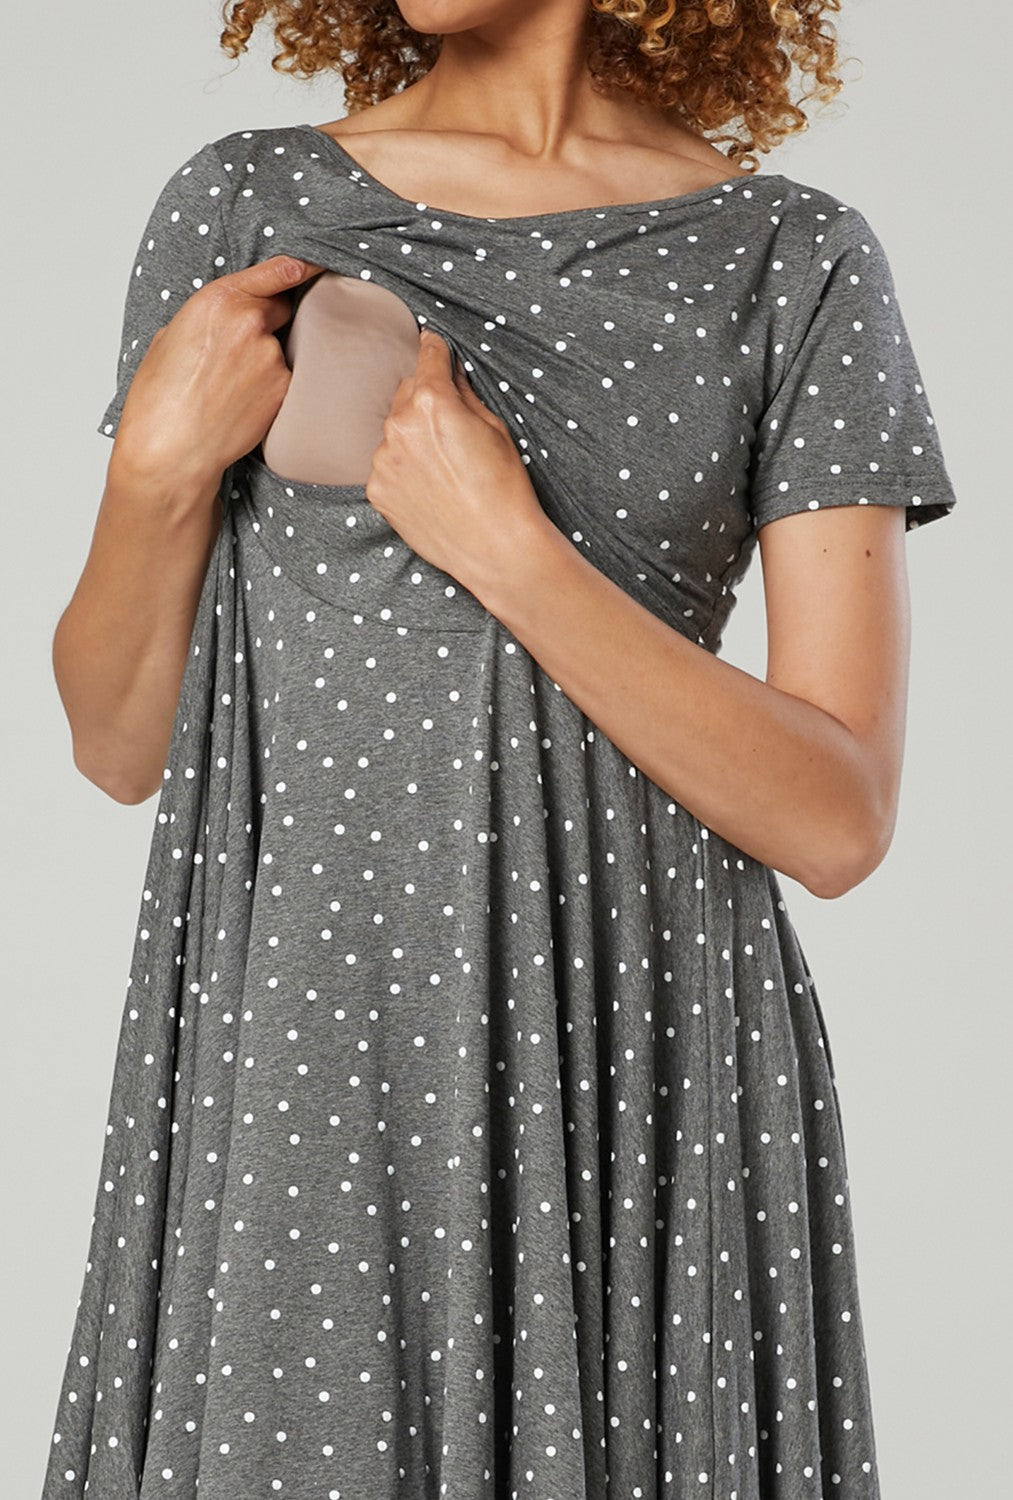 Maternity Summer Nursing Dress in Dots